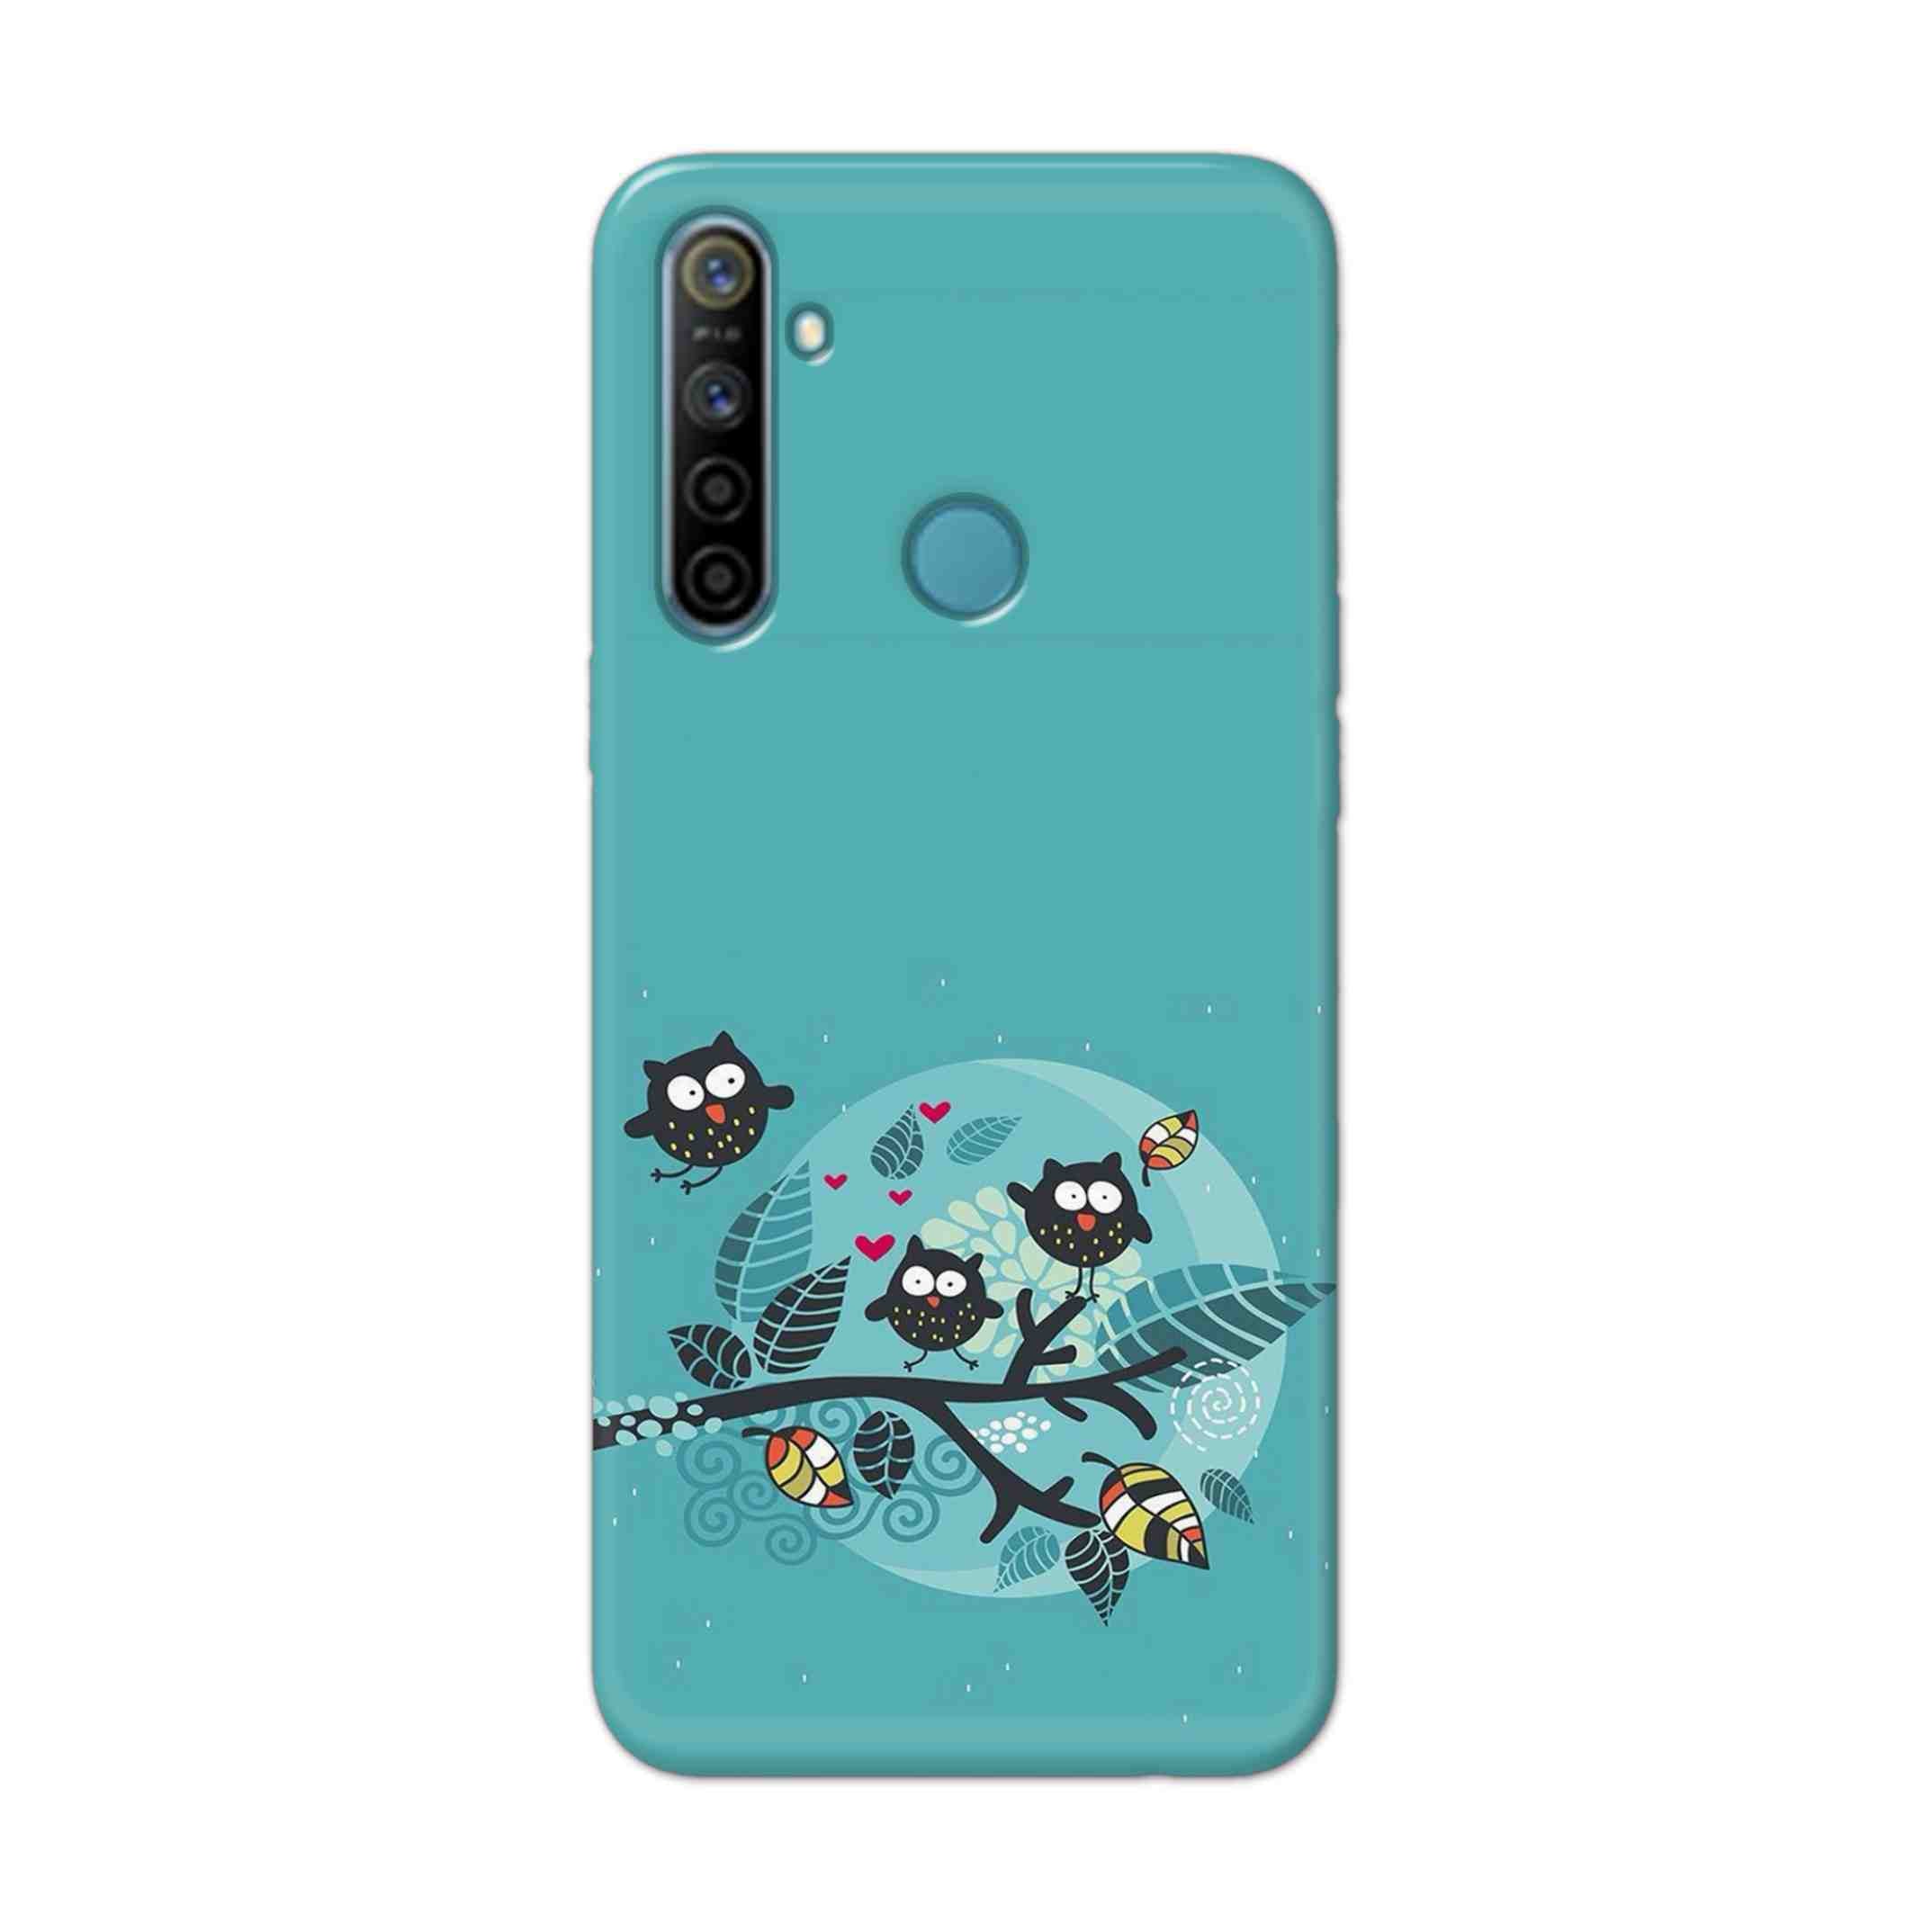 Buy Owl Hard Back Mobile Phone Case Cover For Realme 5i Online